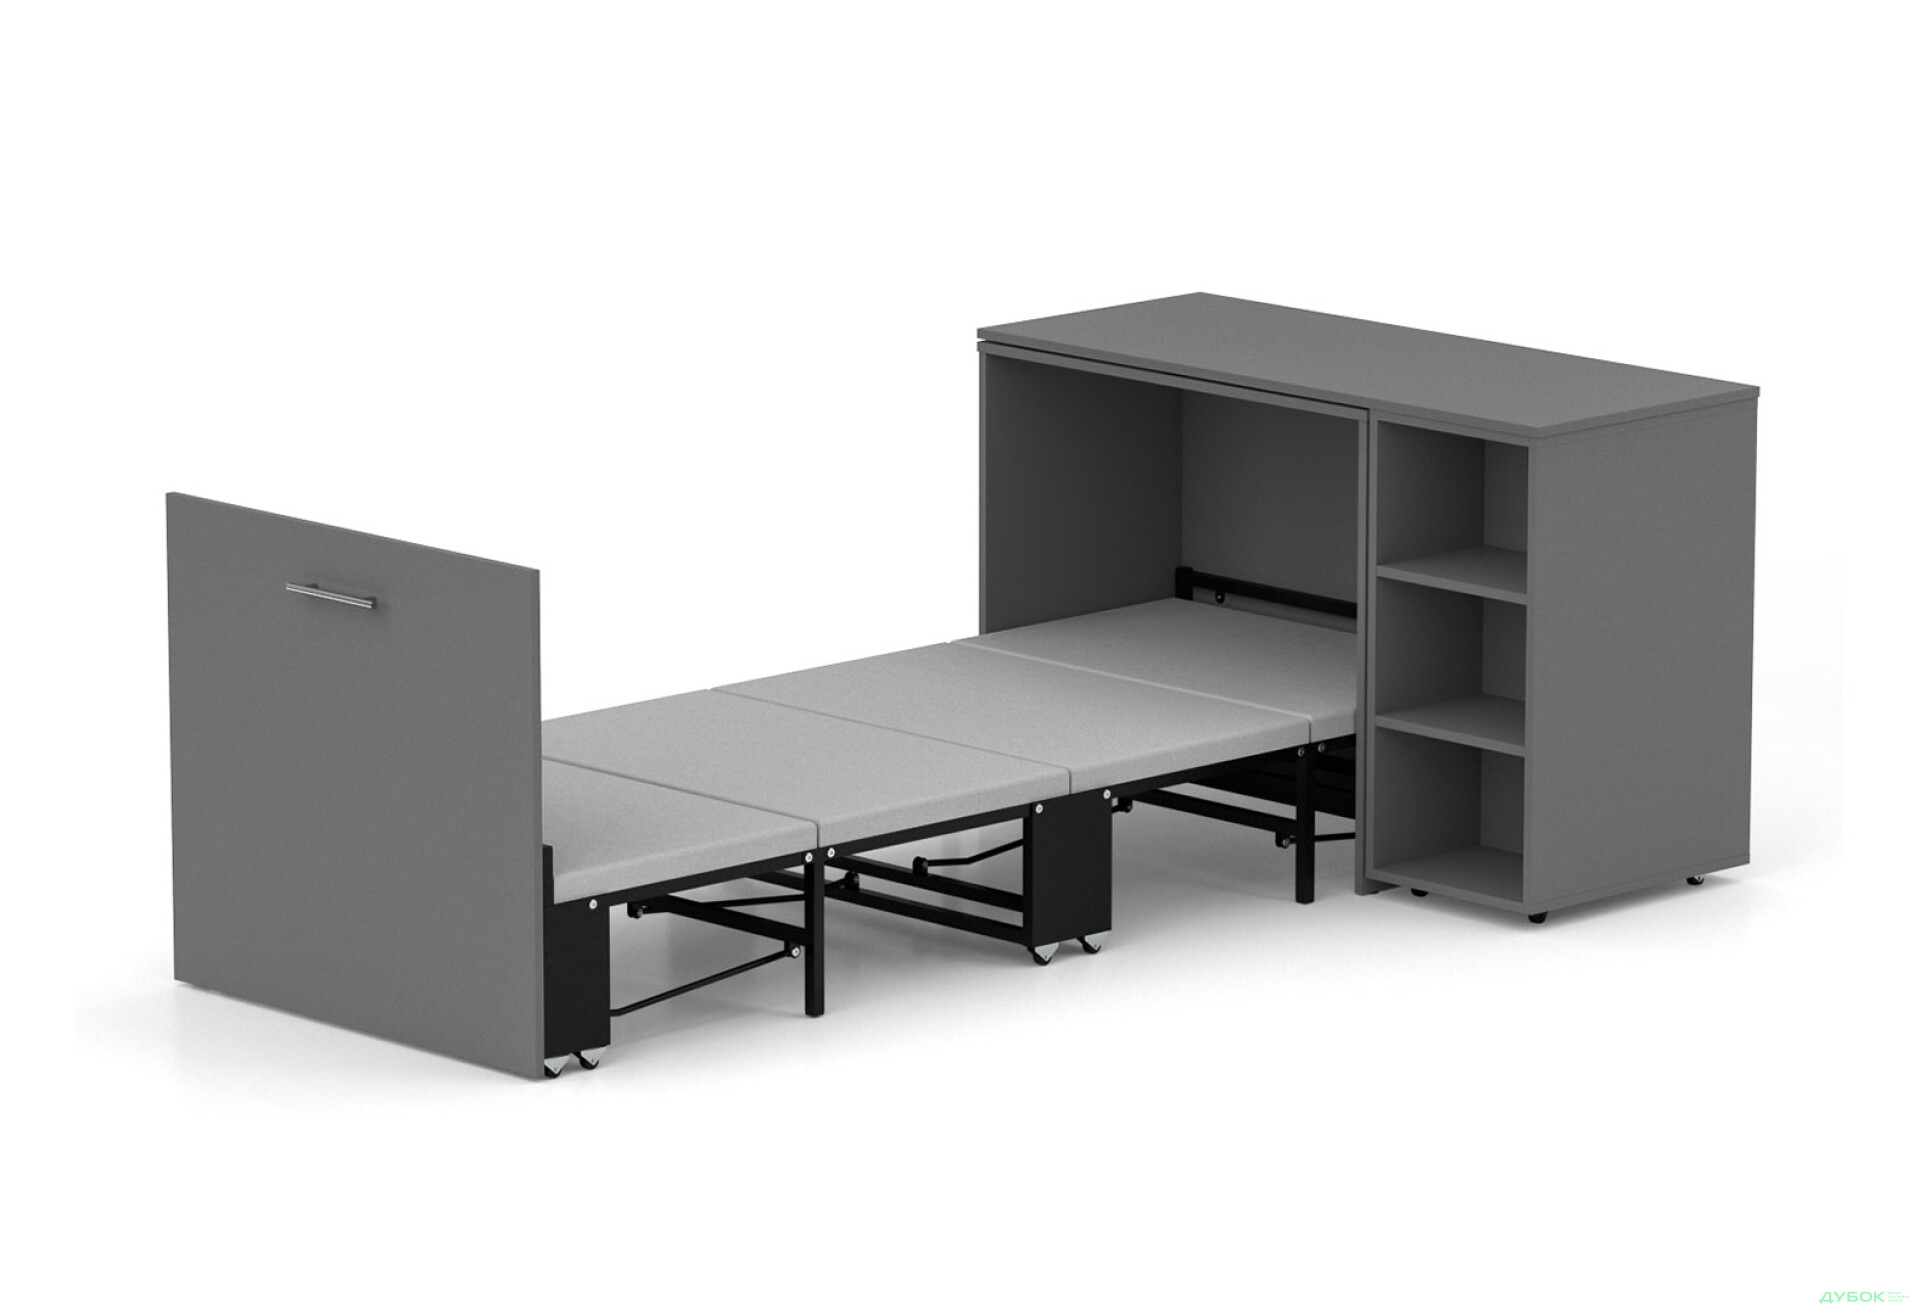 Фото 1 - Ліжко-трансформер Knap Knap Sirim / Сірім-C2 (4 в 1) 80х200 см зі столом та полицями, графіт сірий